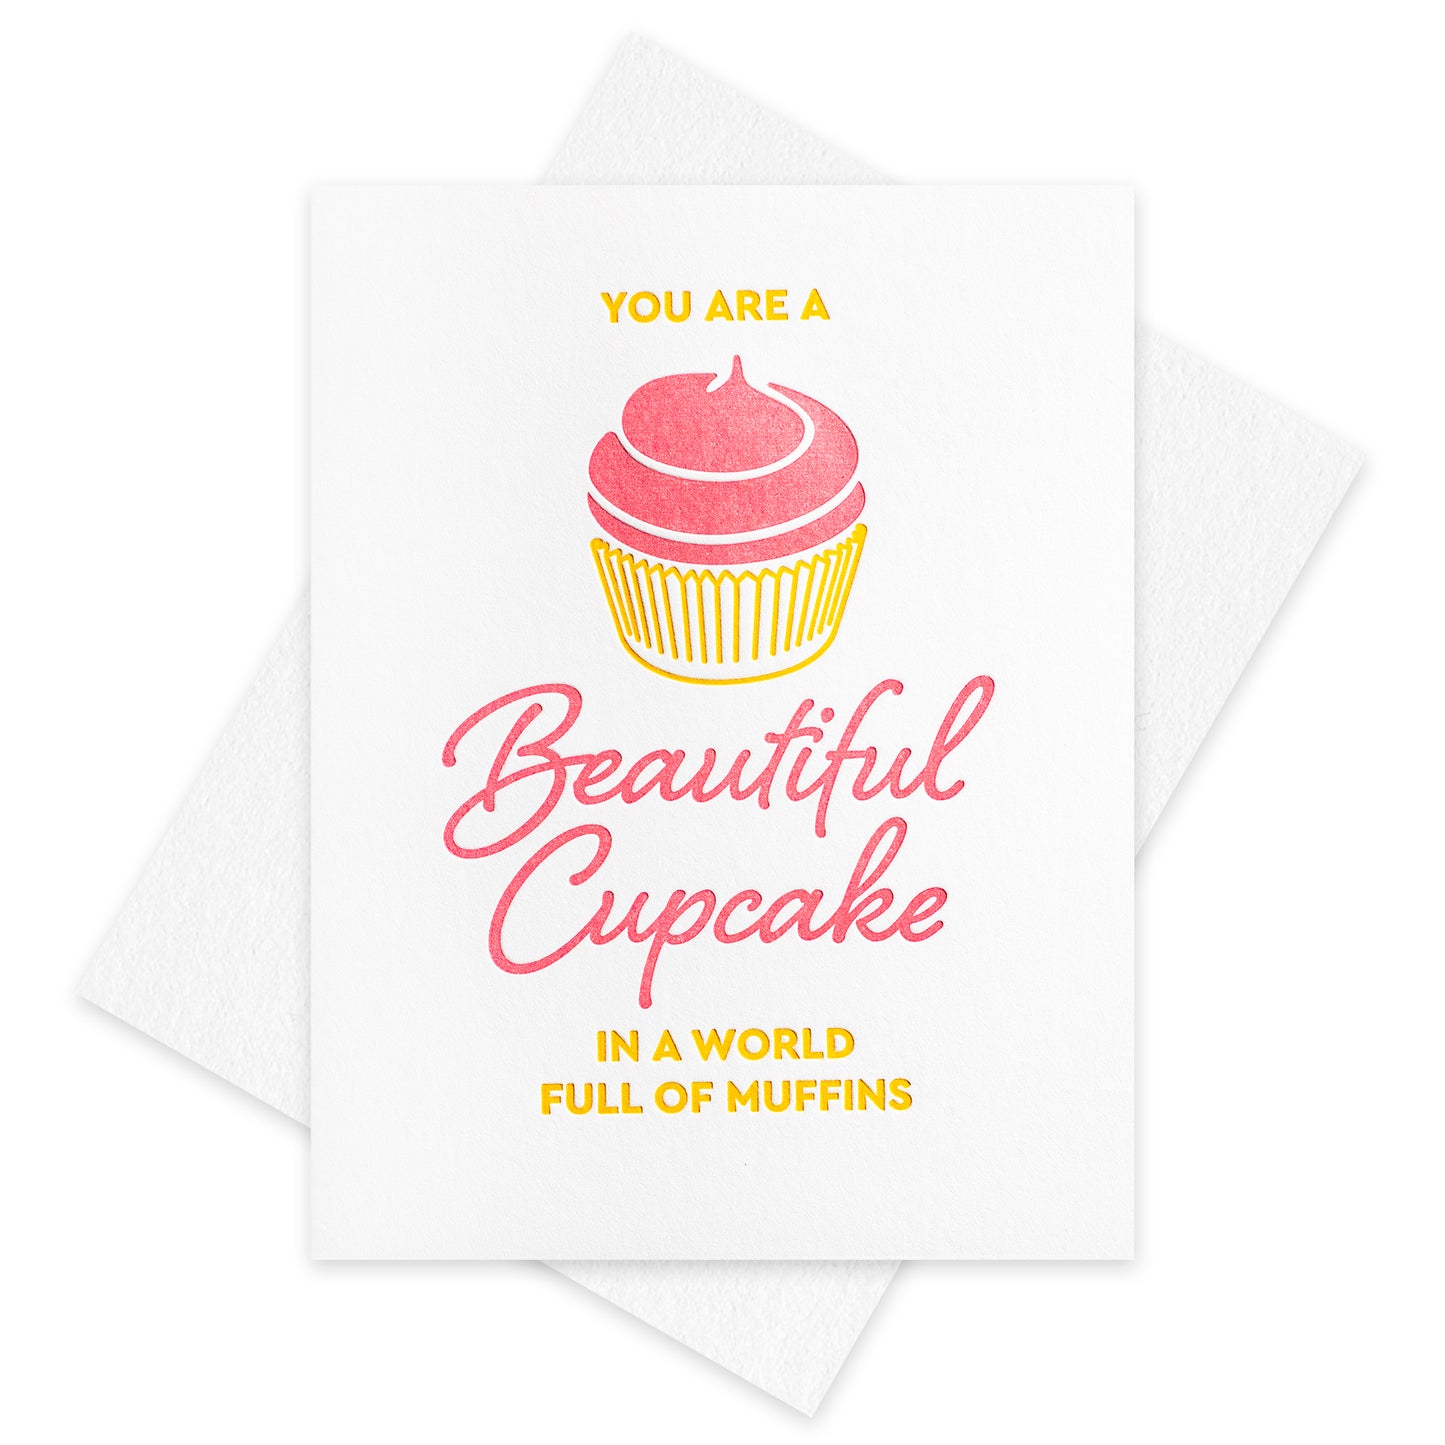 Cupcake Muffin Letterpress Card